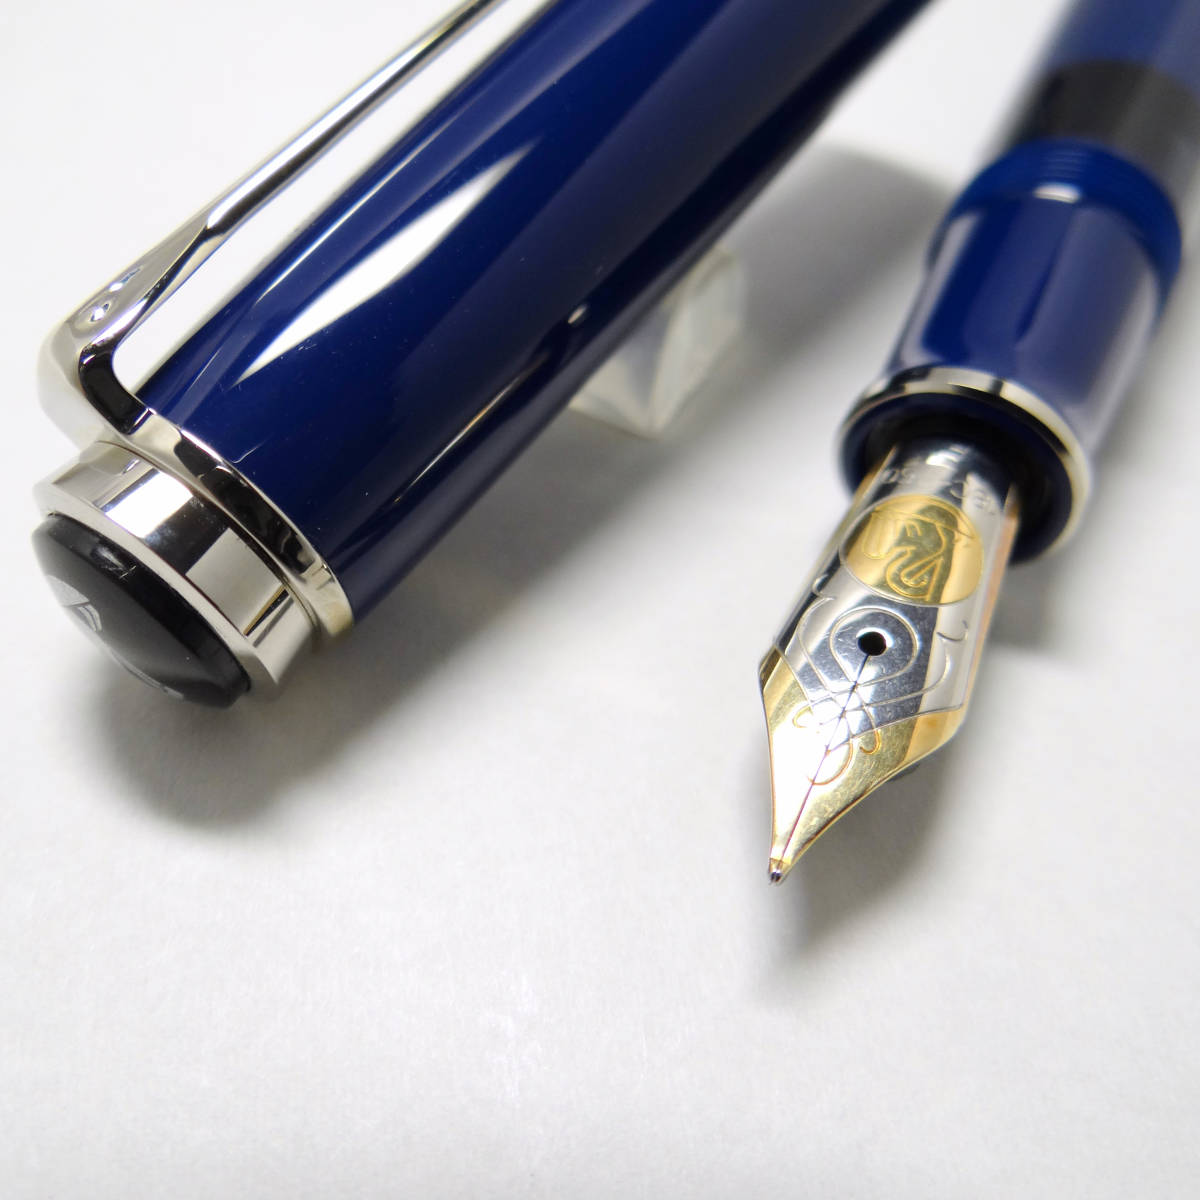 【かなり希少・美品】ペリカン スーベレーン M805 ダークブルー 万年筆 18C-Fnib Pelikan fountain pen M805 Dark blue _画像6